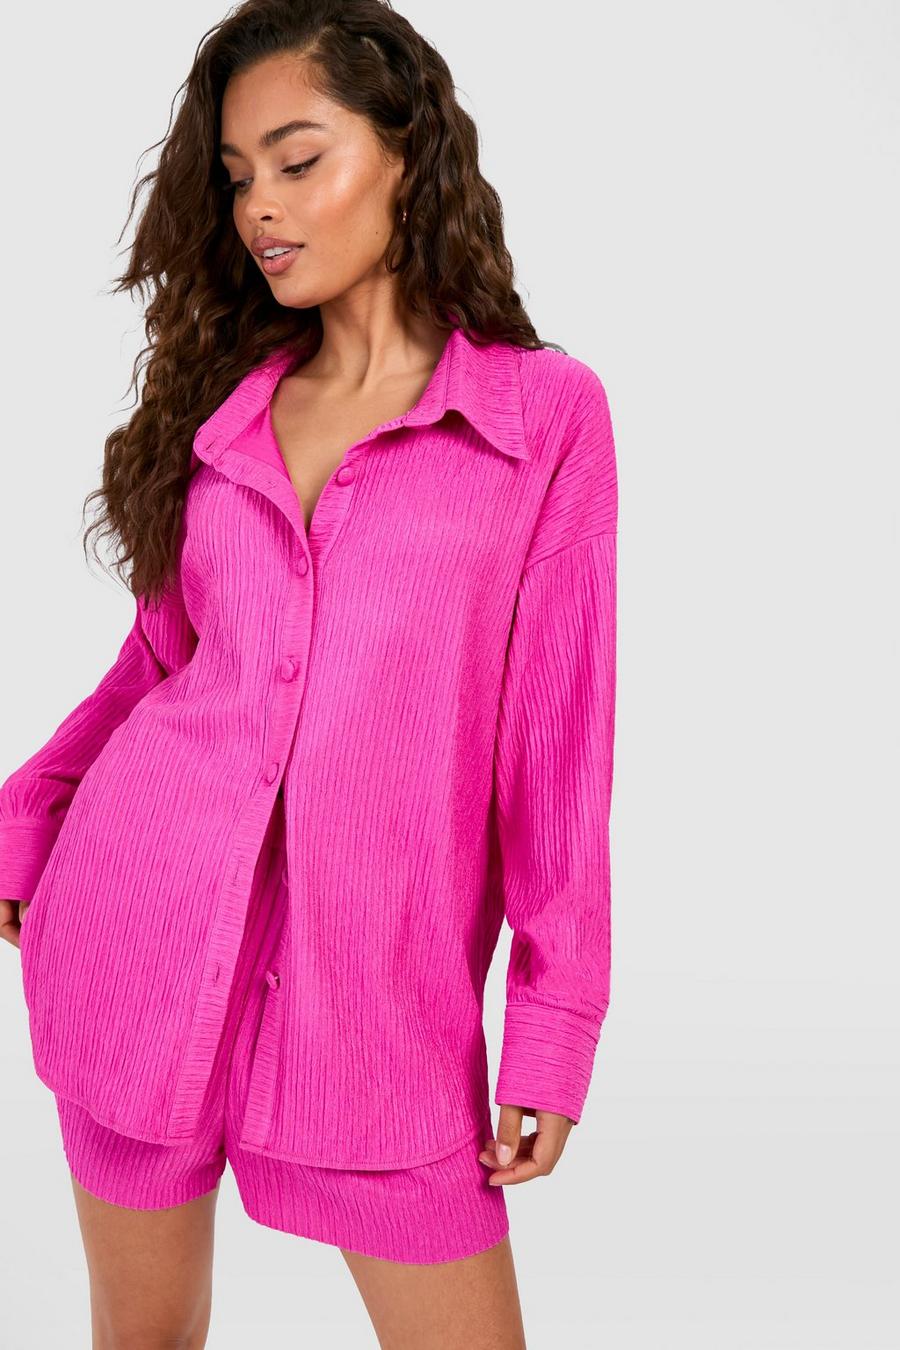 Lockeres Premium-Hemd in Knitteroptik, Bright pink